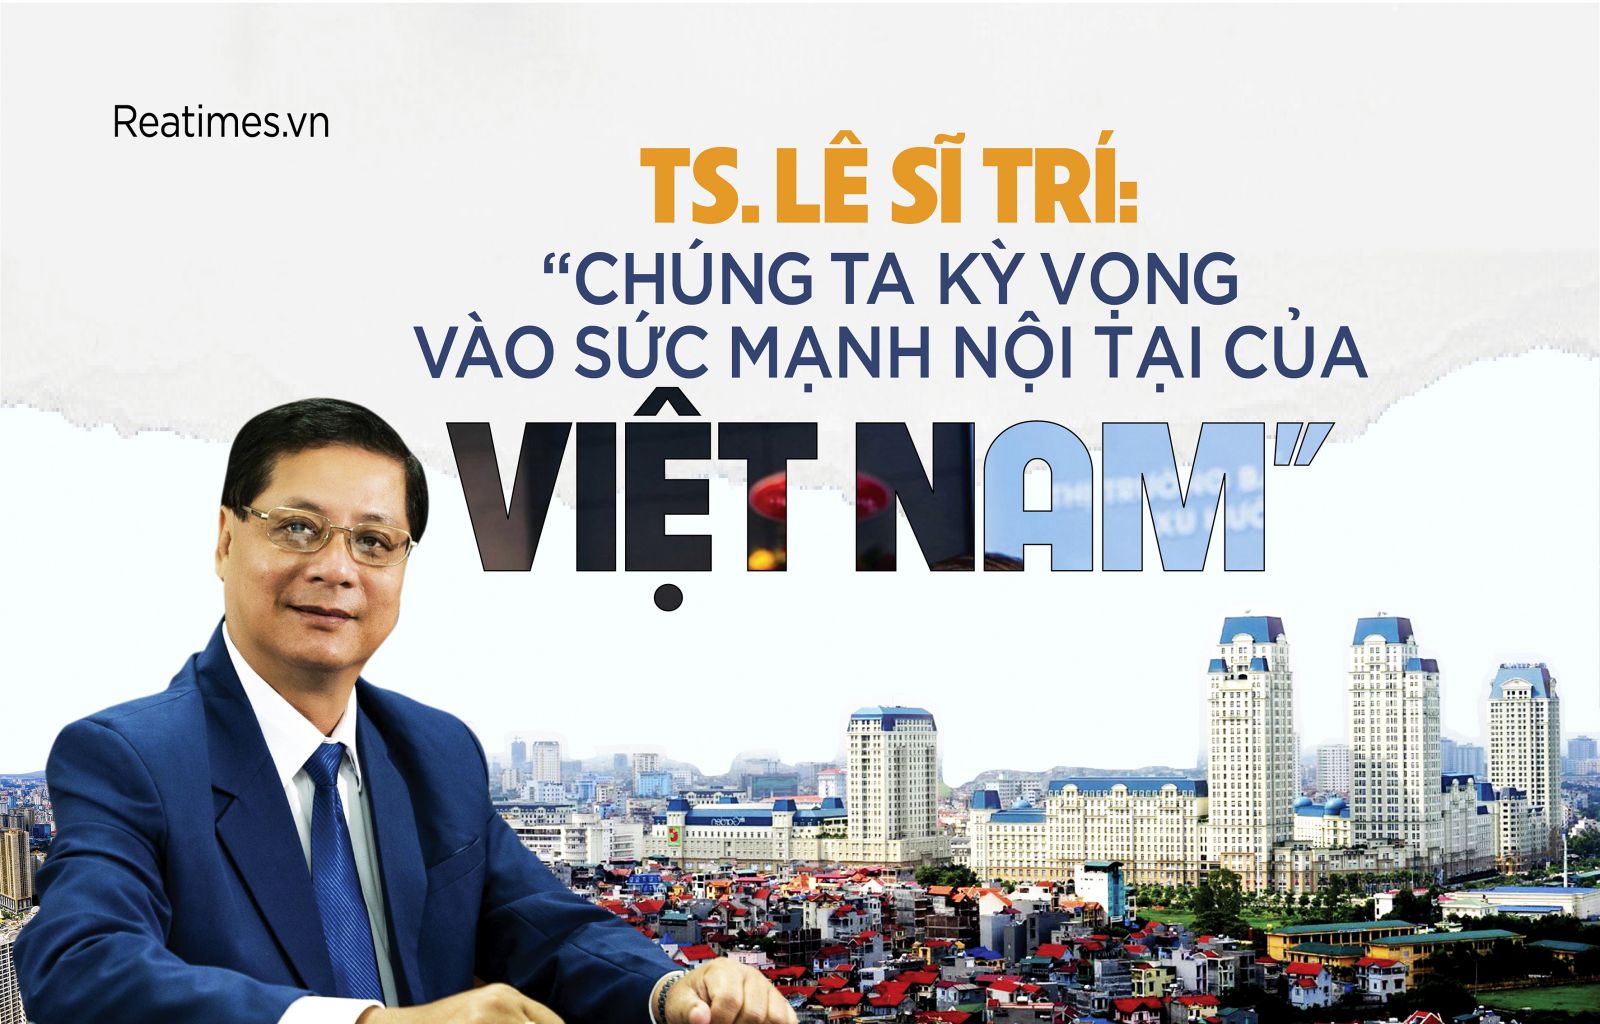 TS. Lê Sĩ Trí: “Chúng ta kỳ vọng vào sức mạnh nội tại của Việt Nam“